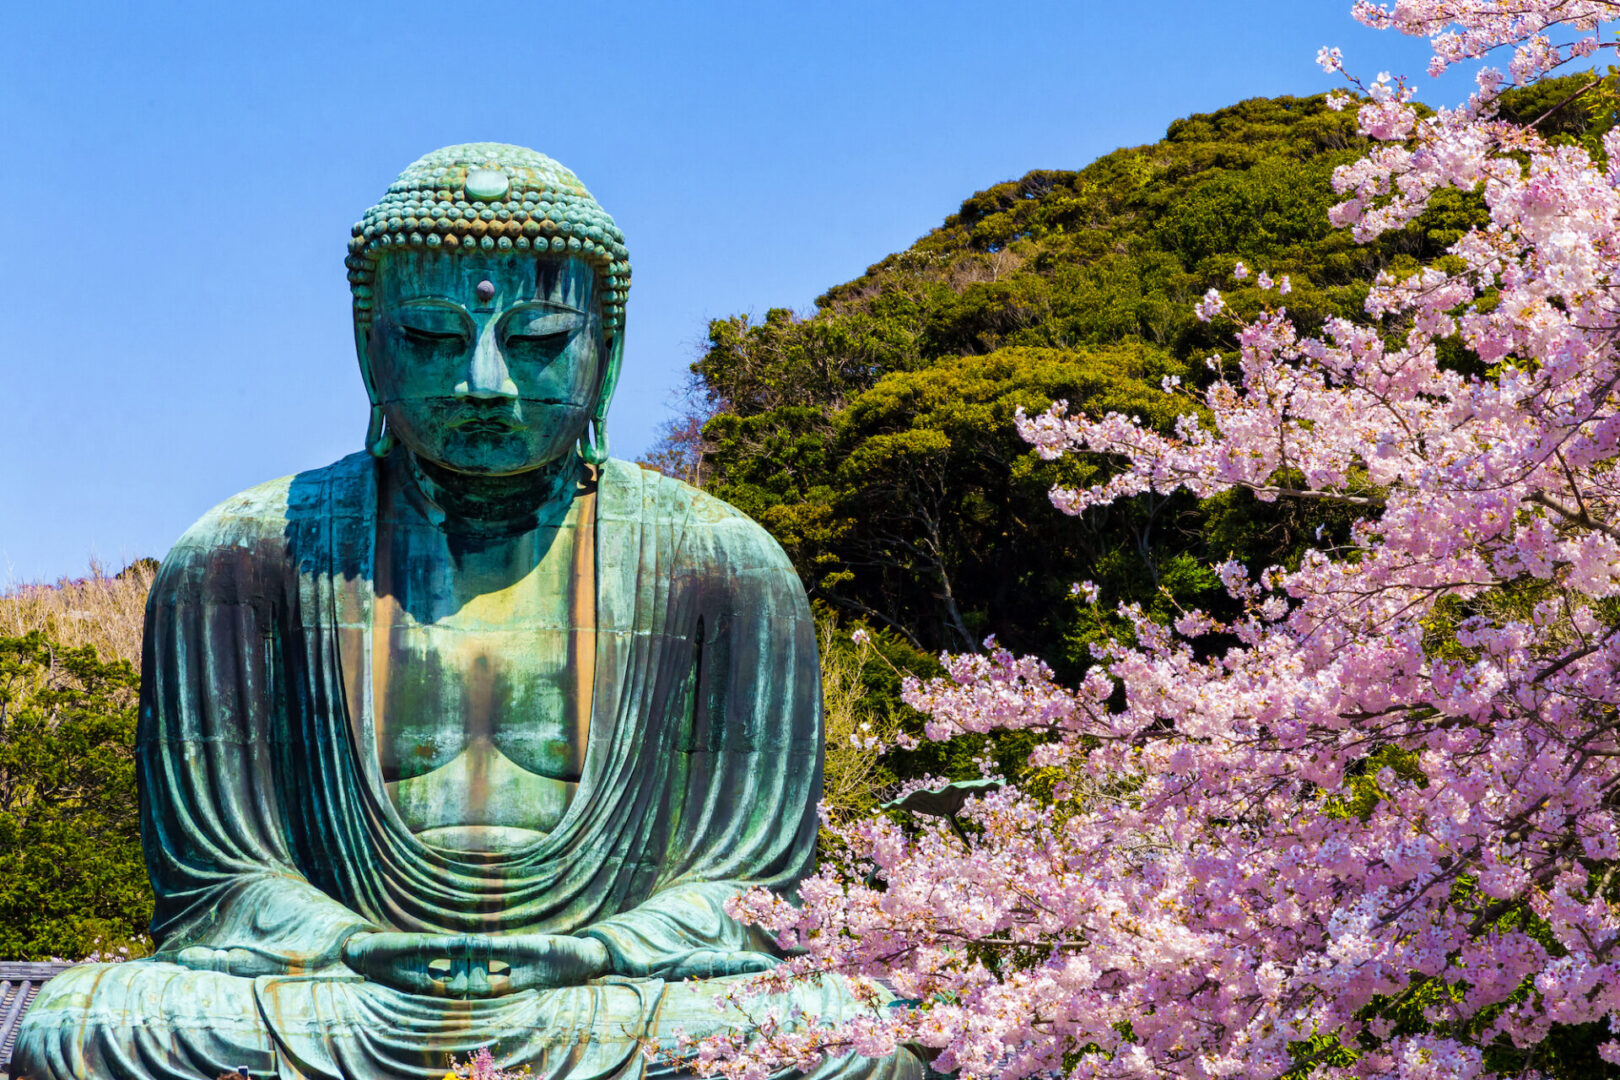 Great Buddha statue with sakura cherry blossoms in the foreground, in Kamakura